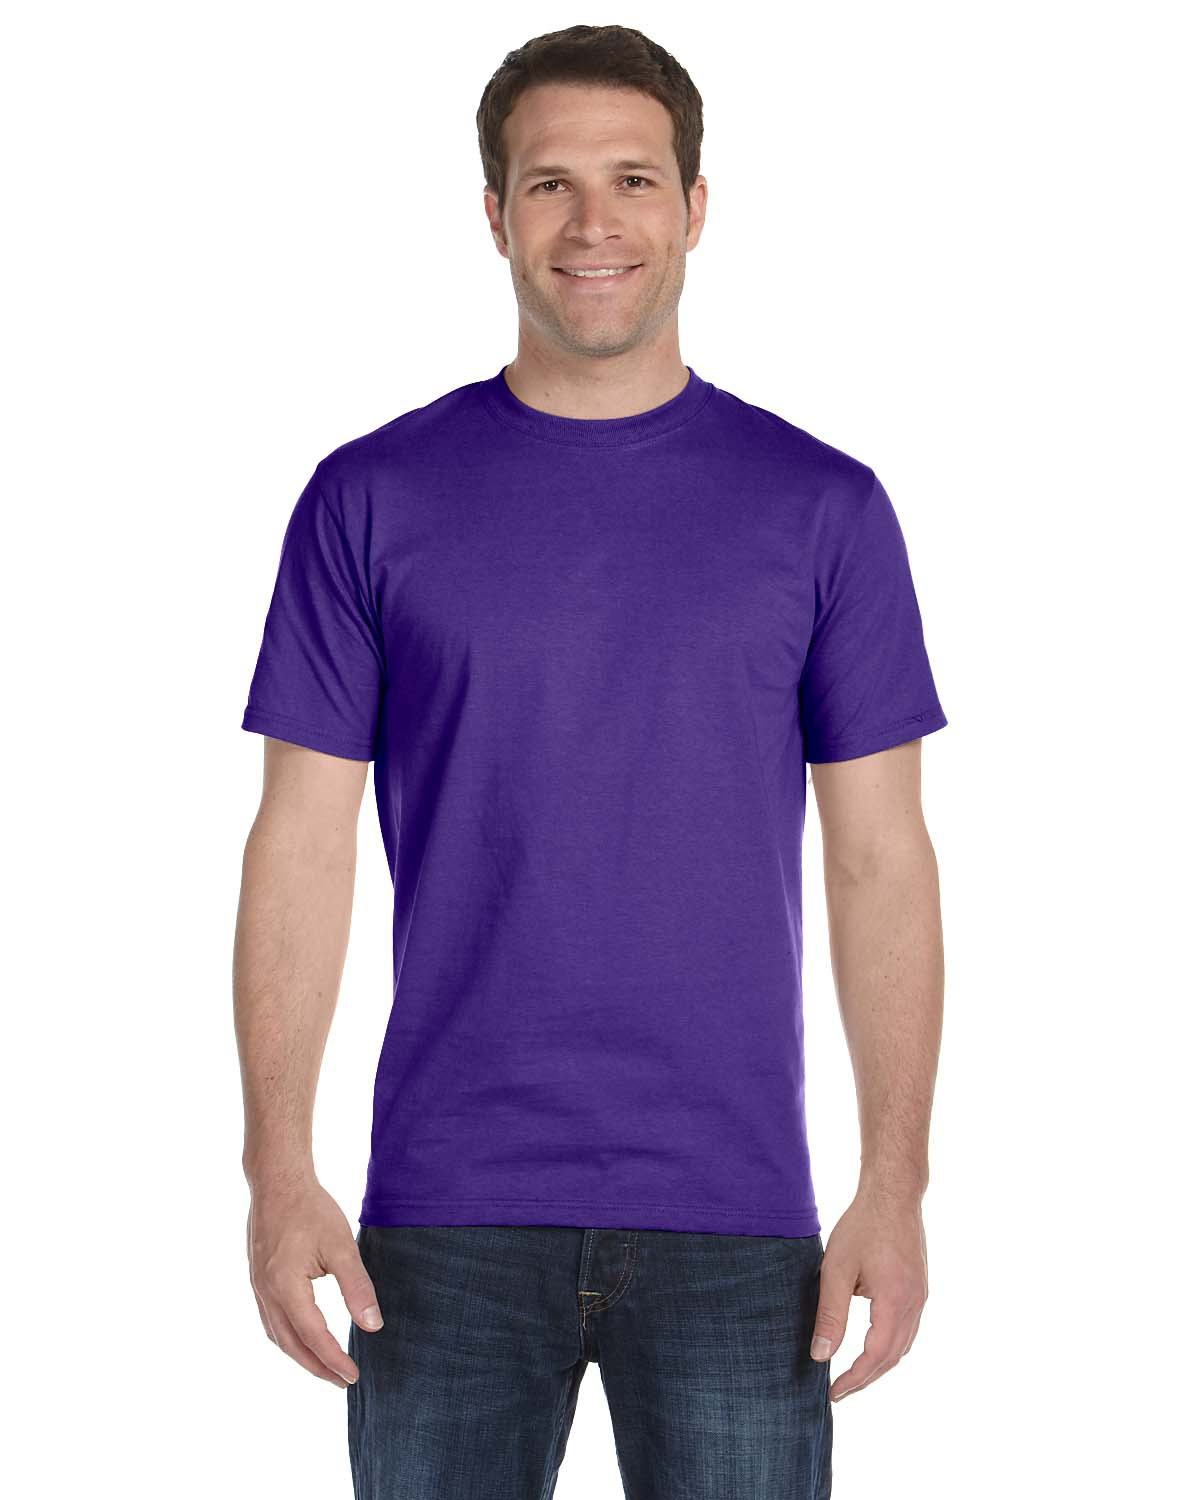 Hanes Mens ComfortBlend Short Sleeve T Shirt 50/50 Tee S M L XL 2XL 5170 